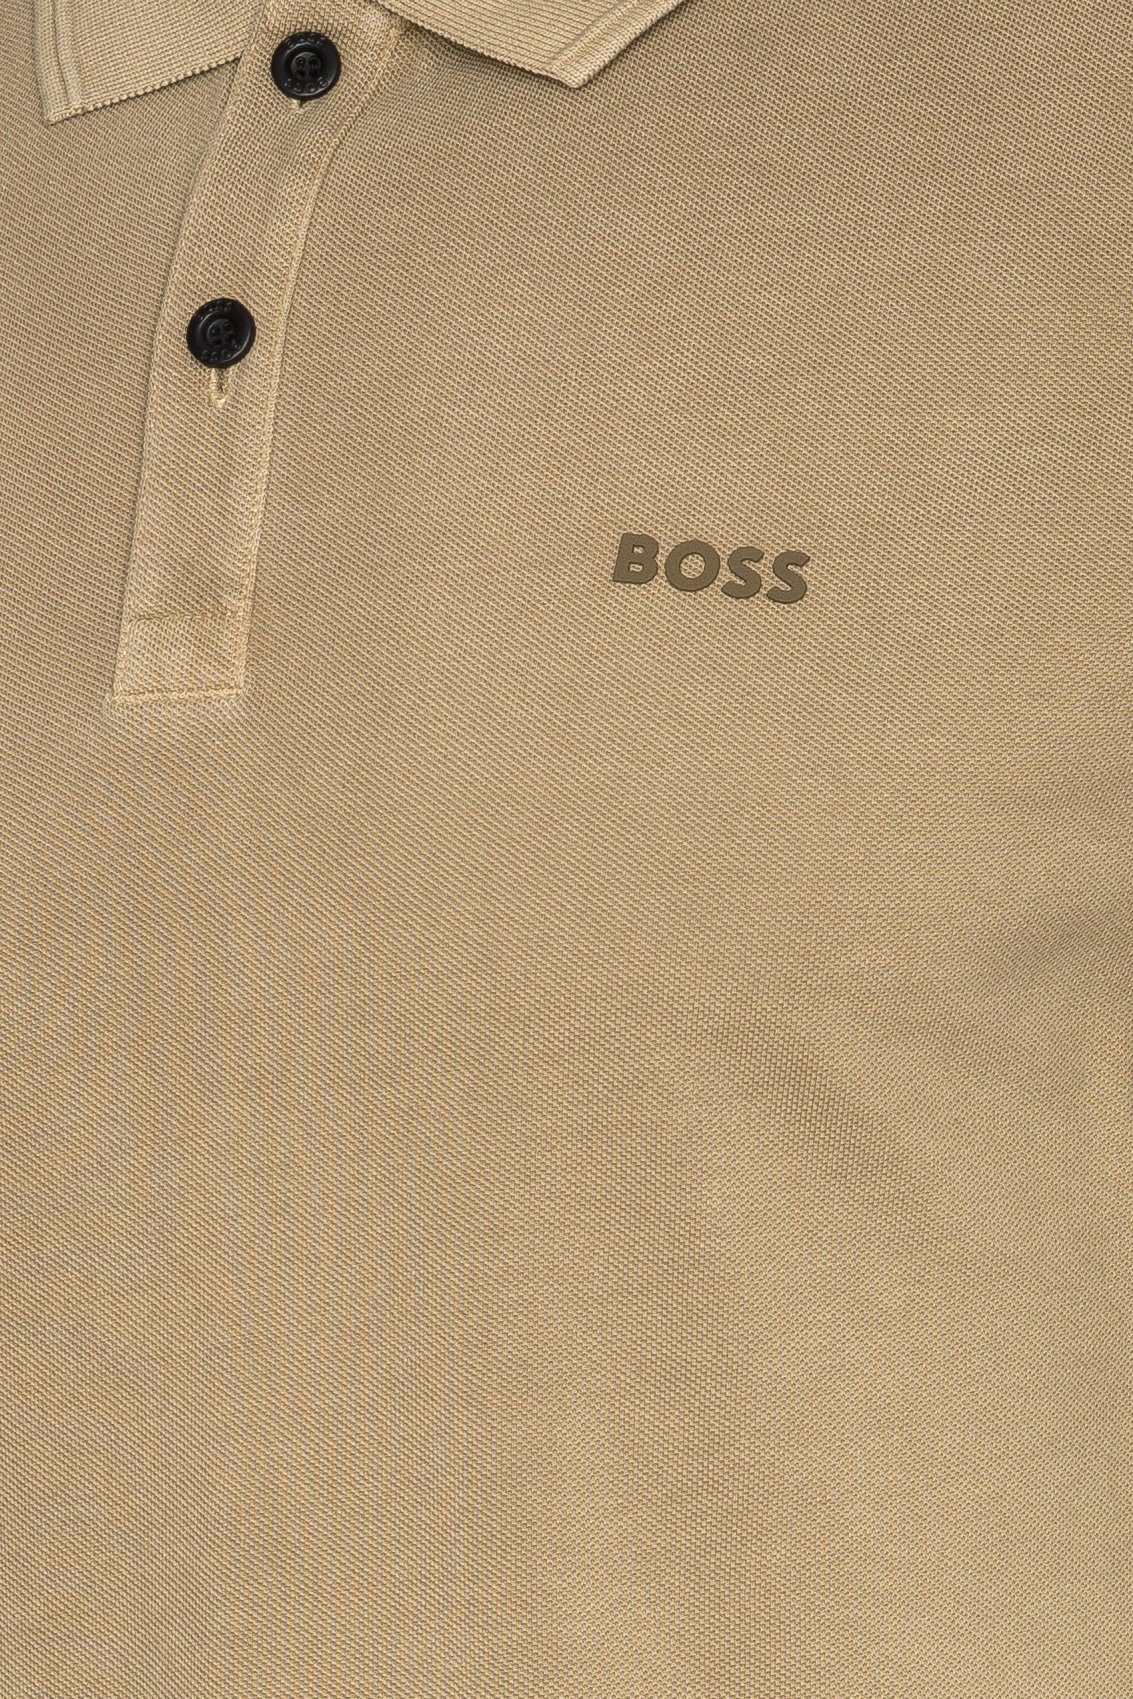 BOSS ORANGE Beige (1-tlg) Poloshirt Prime (263)